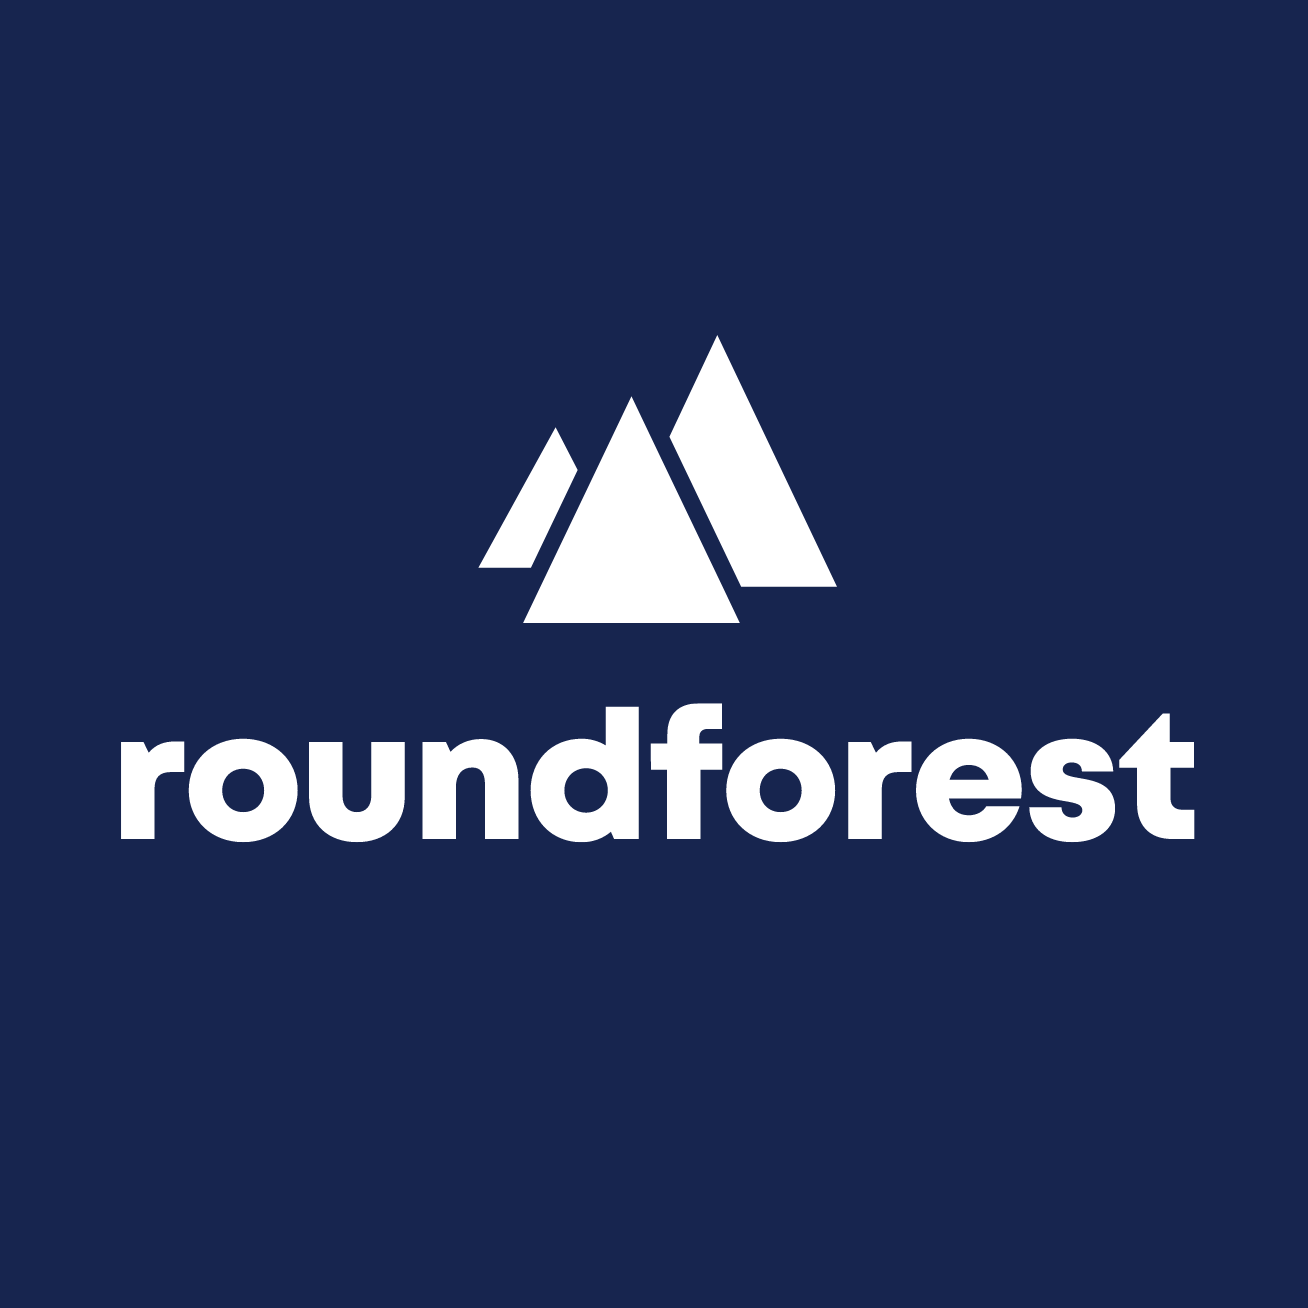 Roundforest